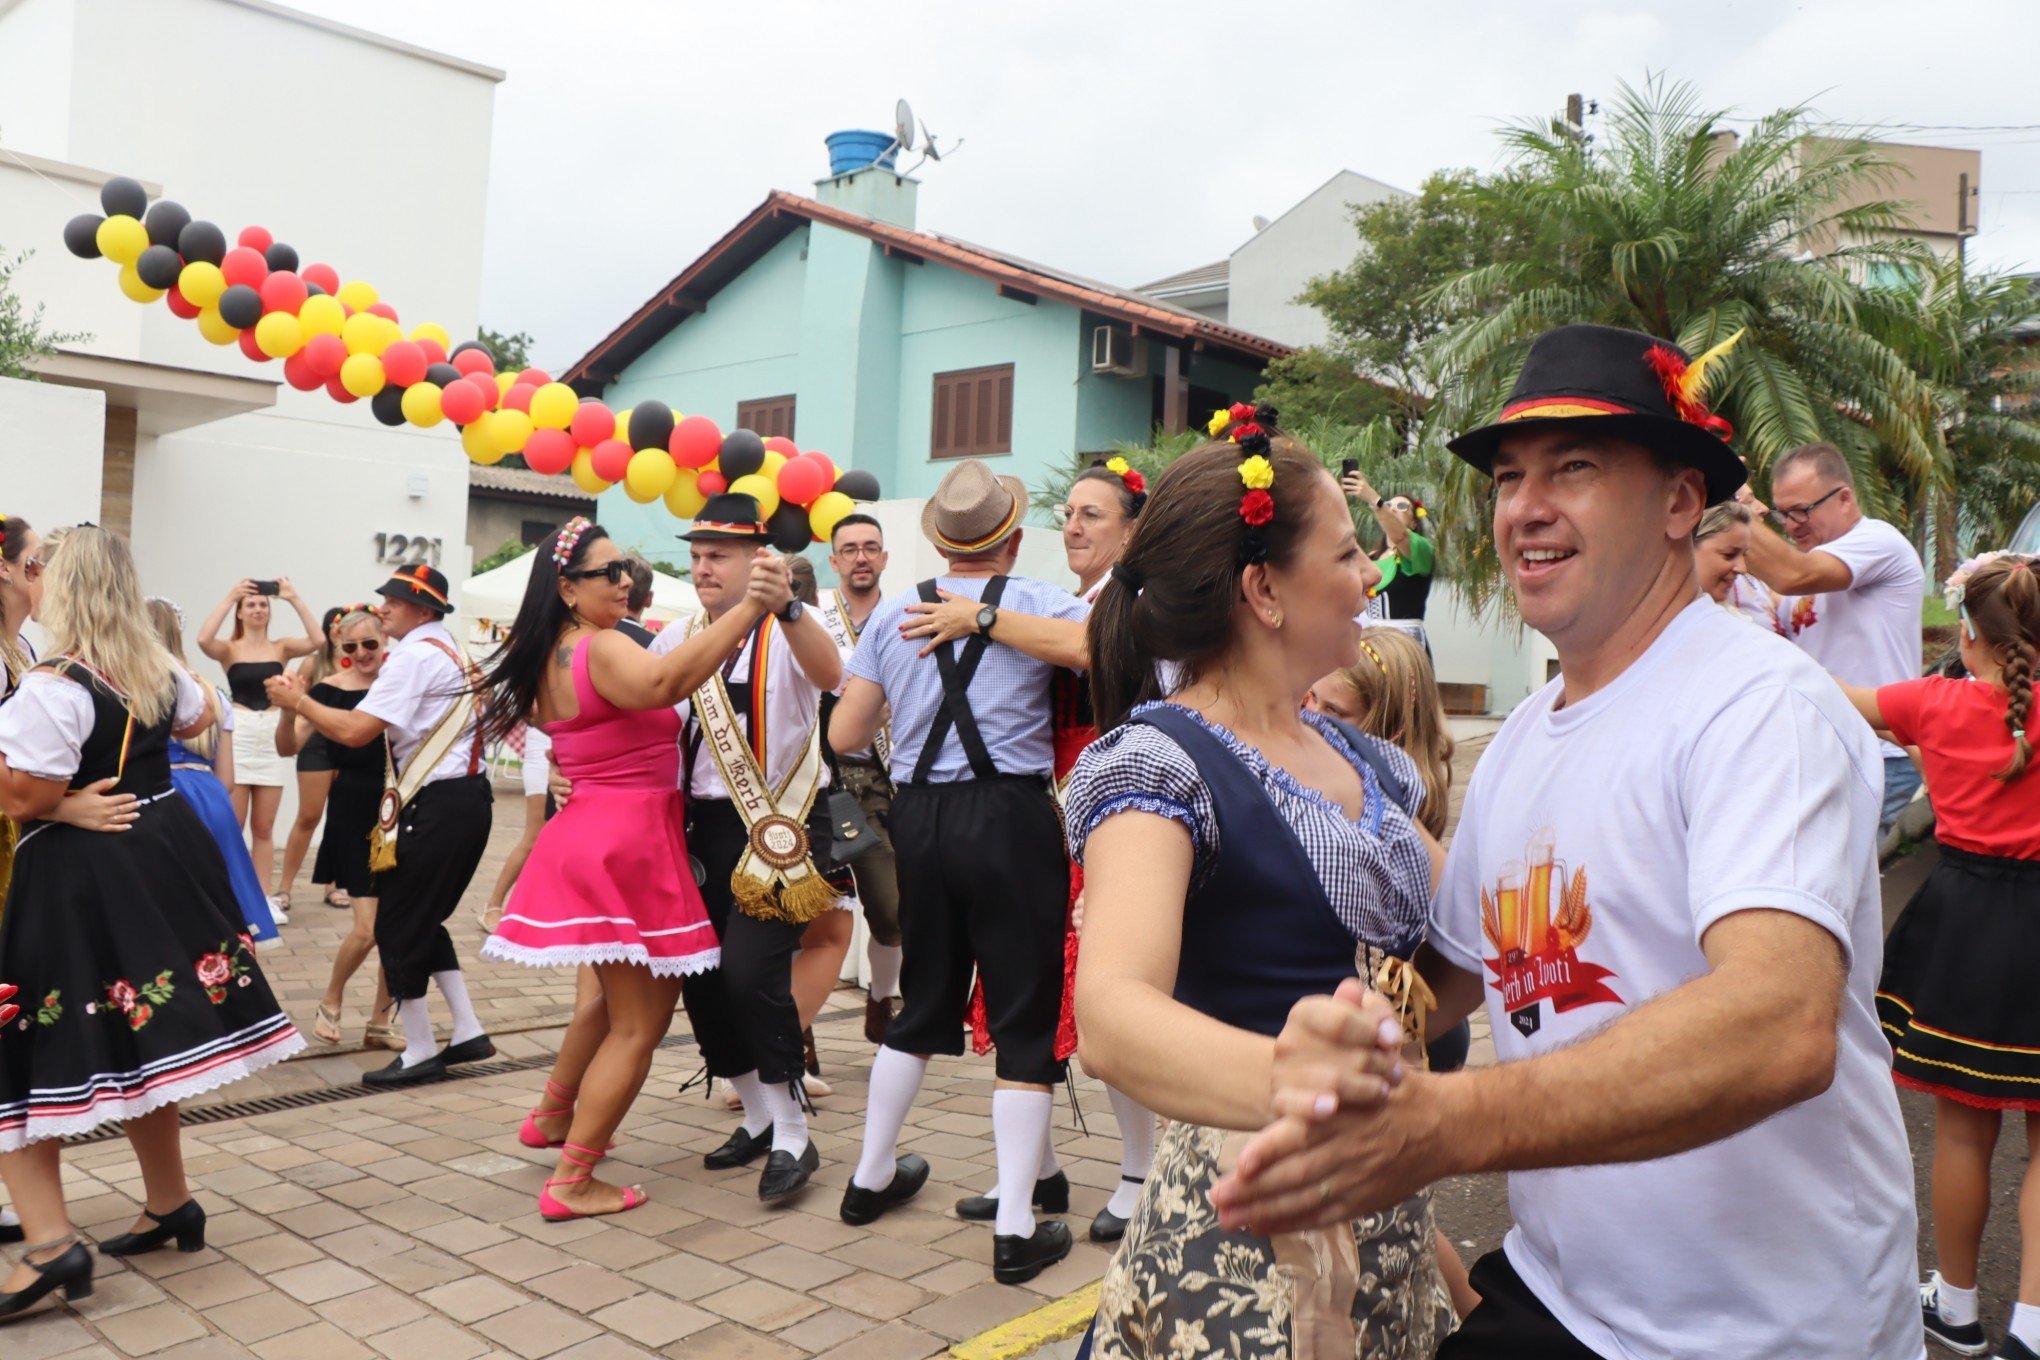 KERB: Comitiva invade casas e leva alegria da festa alemã para moradores